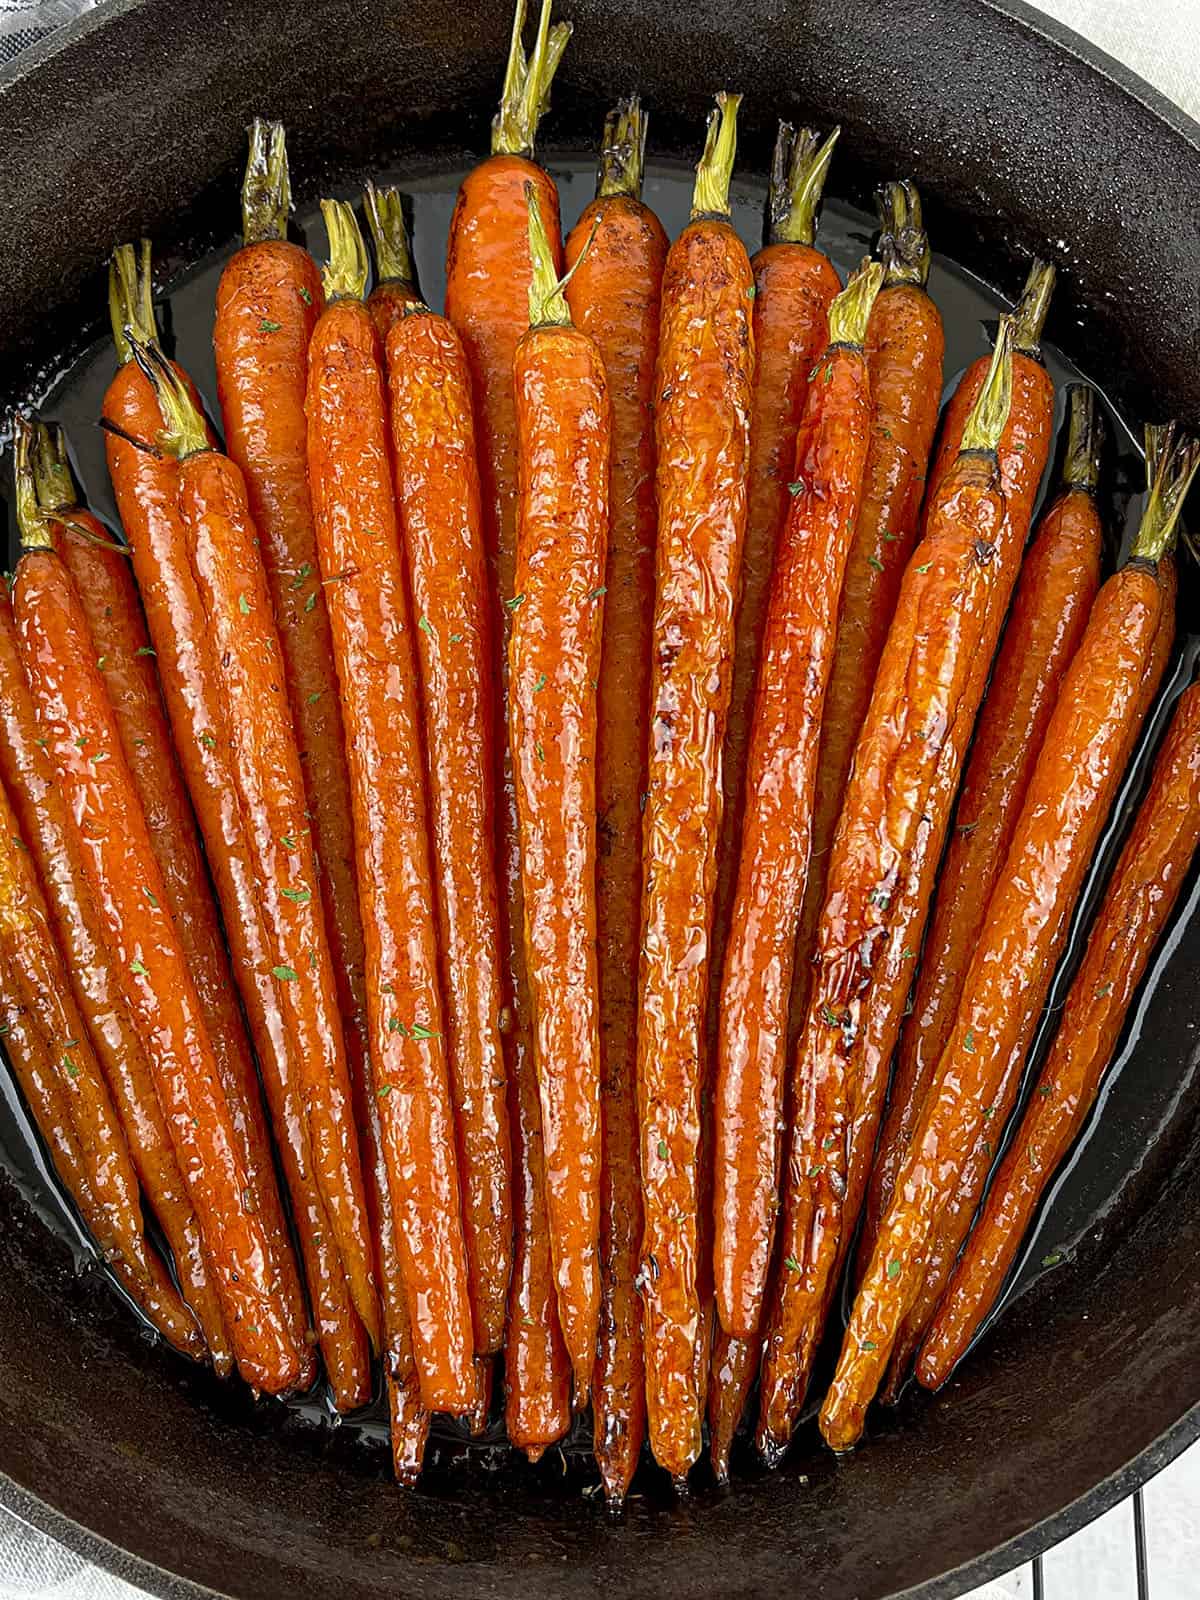 Roasted whole carrots with a sweet glaze.